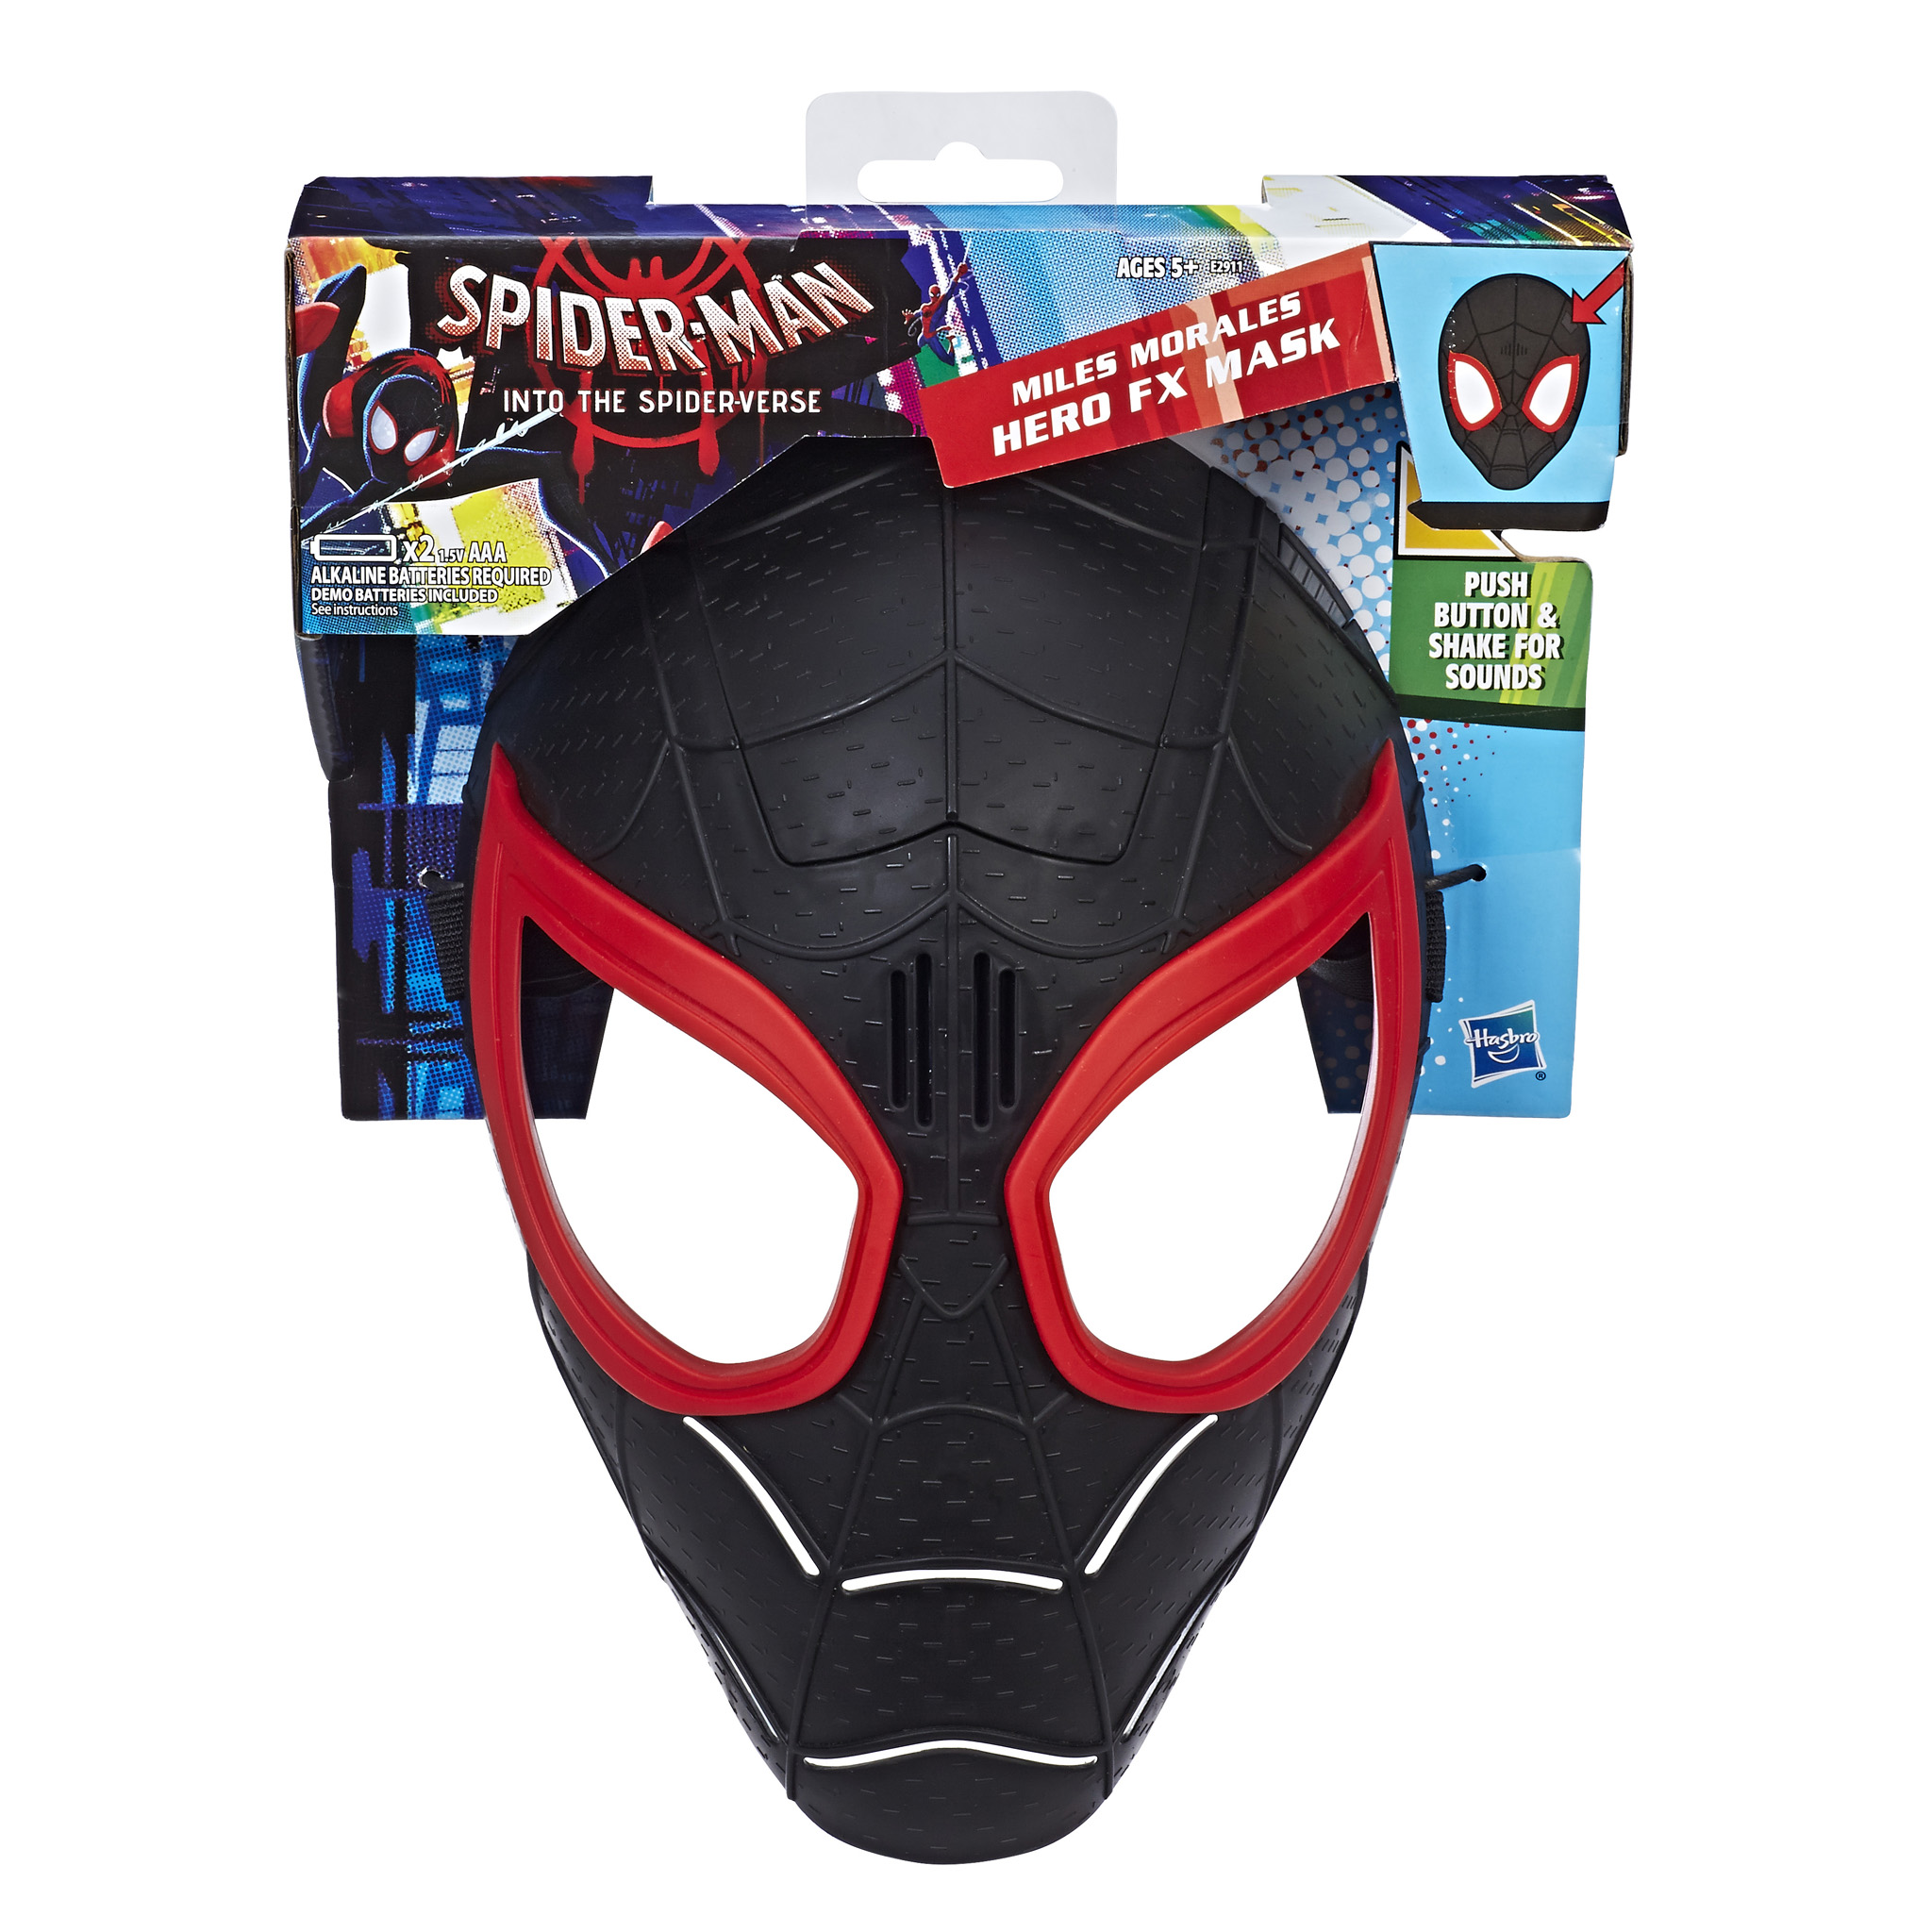 Hasbro Reveals MORE Spider-Man: Into The Spider-Verse Toys – DisKingdom.com